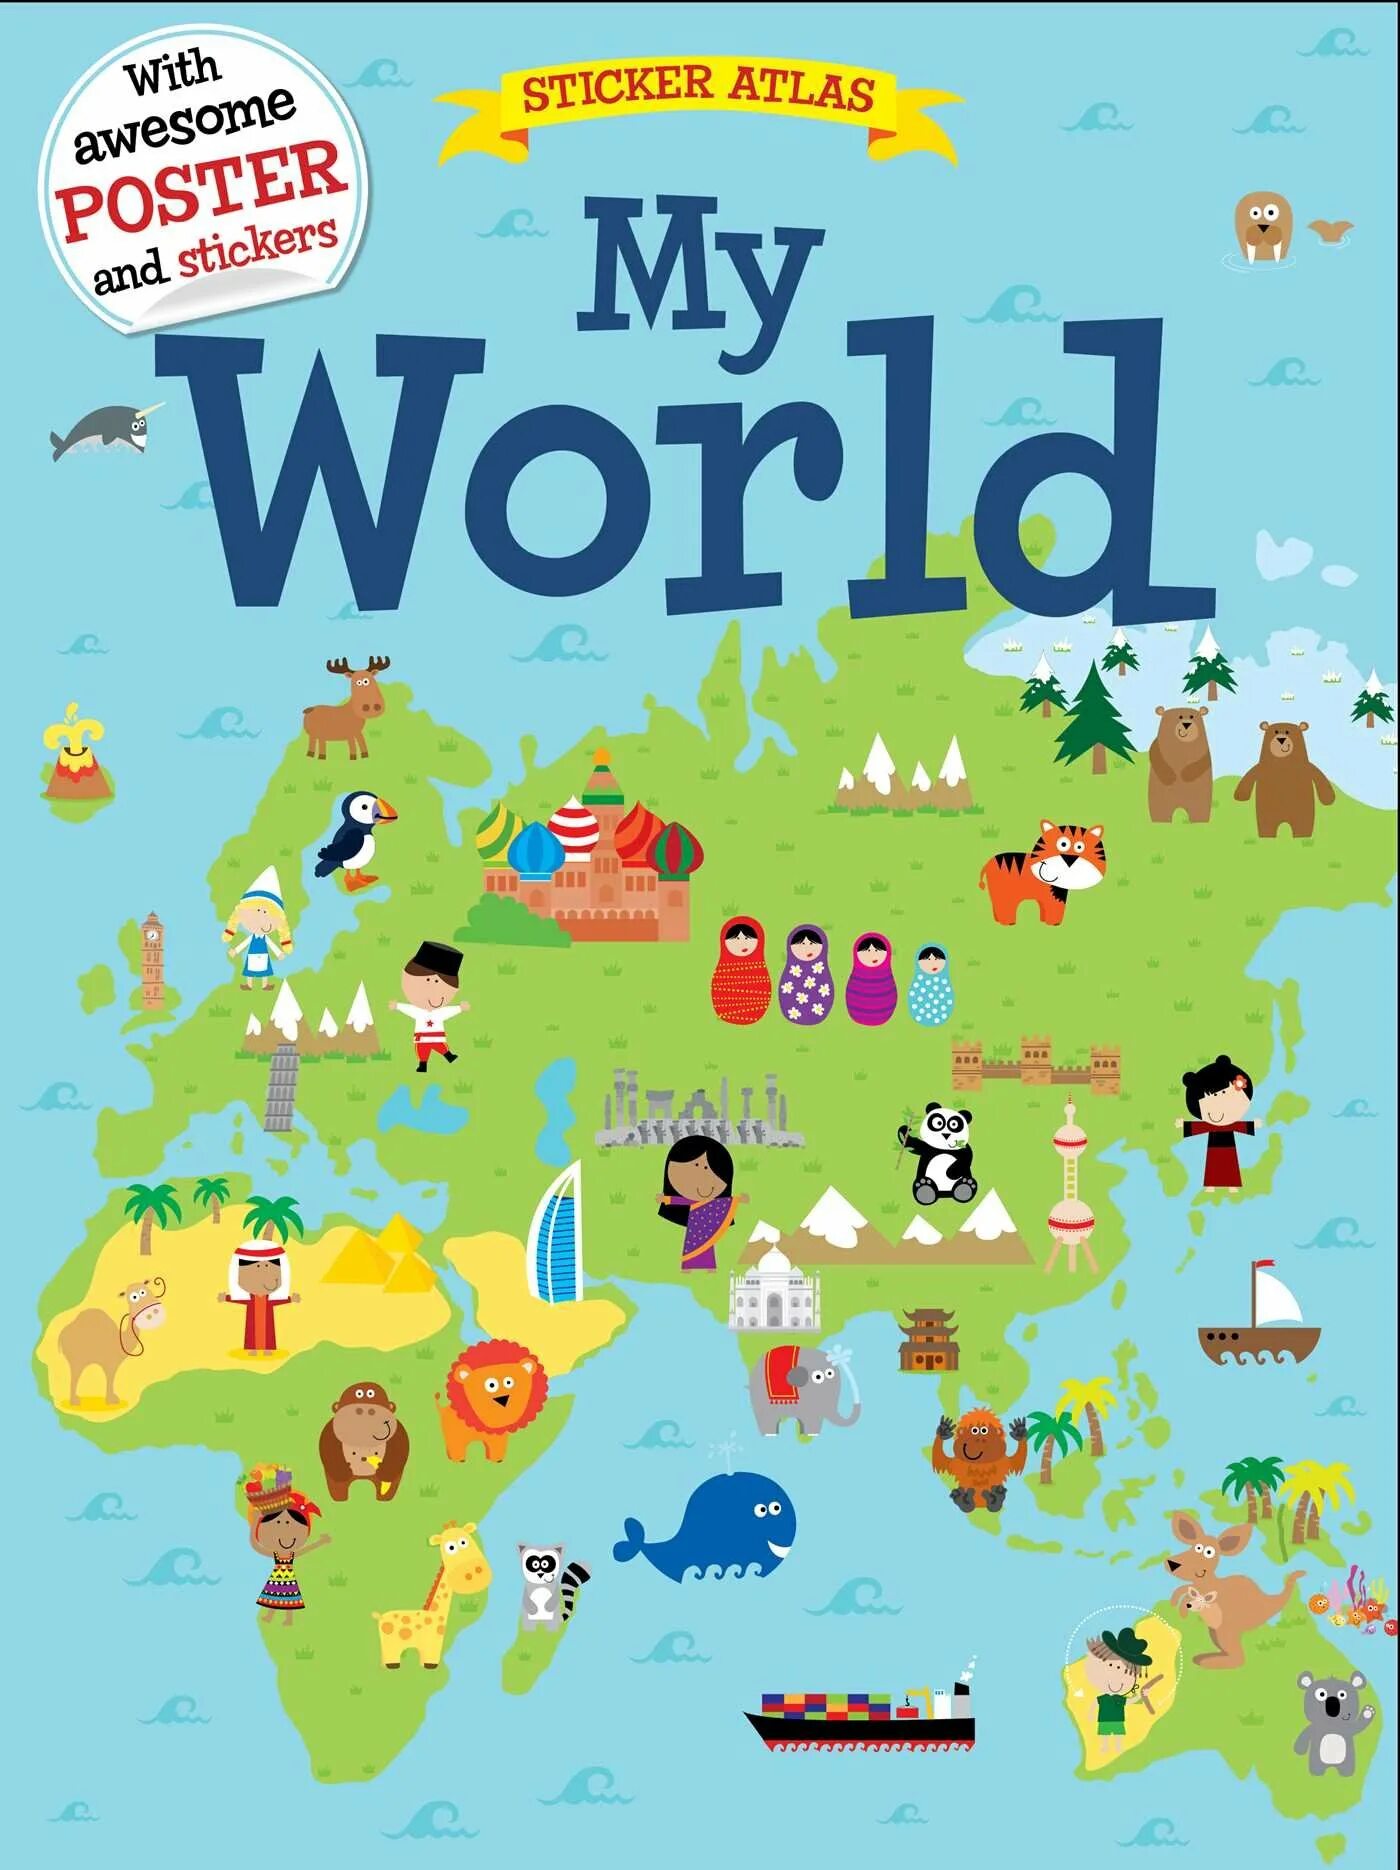 Poster world. Плакат для World. Стикеры география. Atlas плакаты.